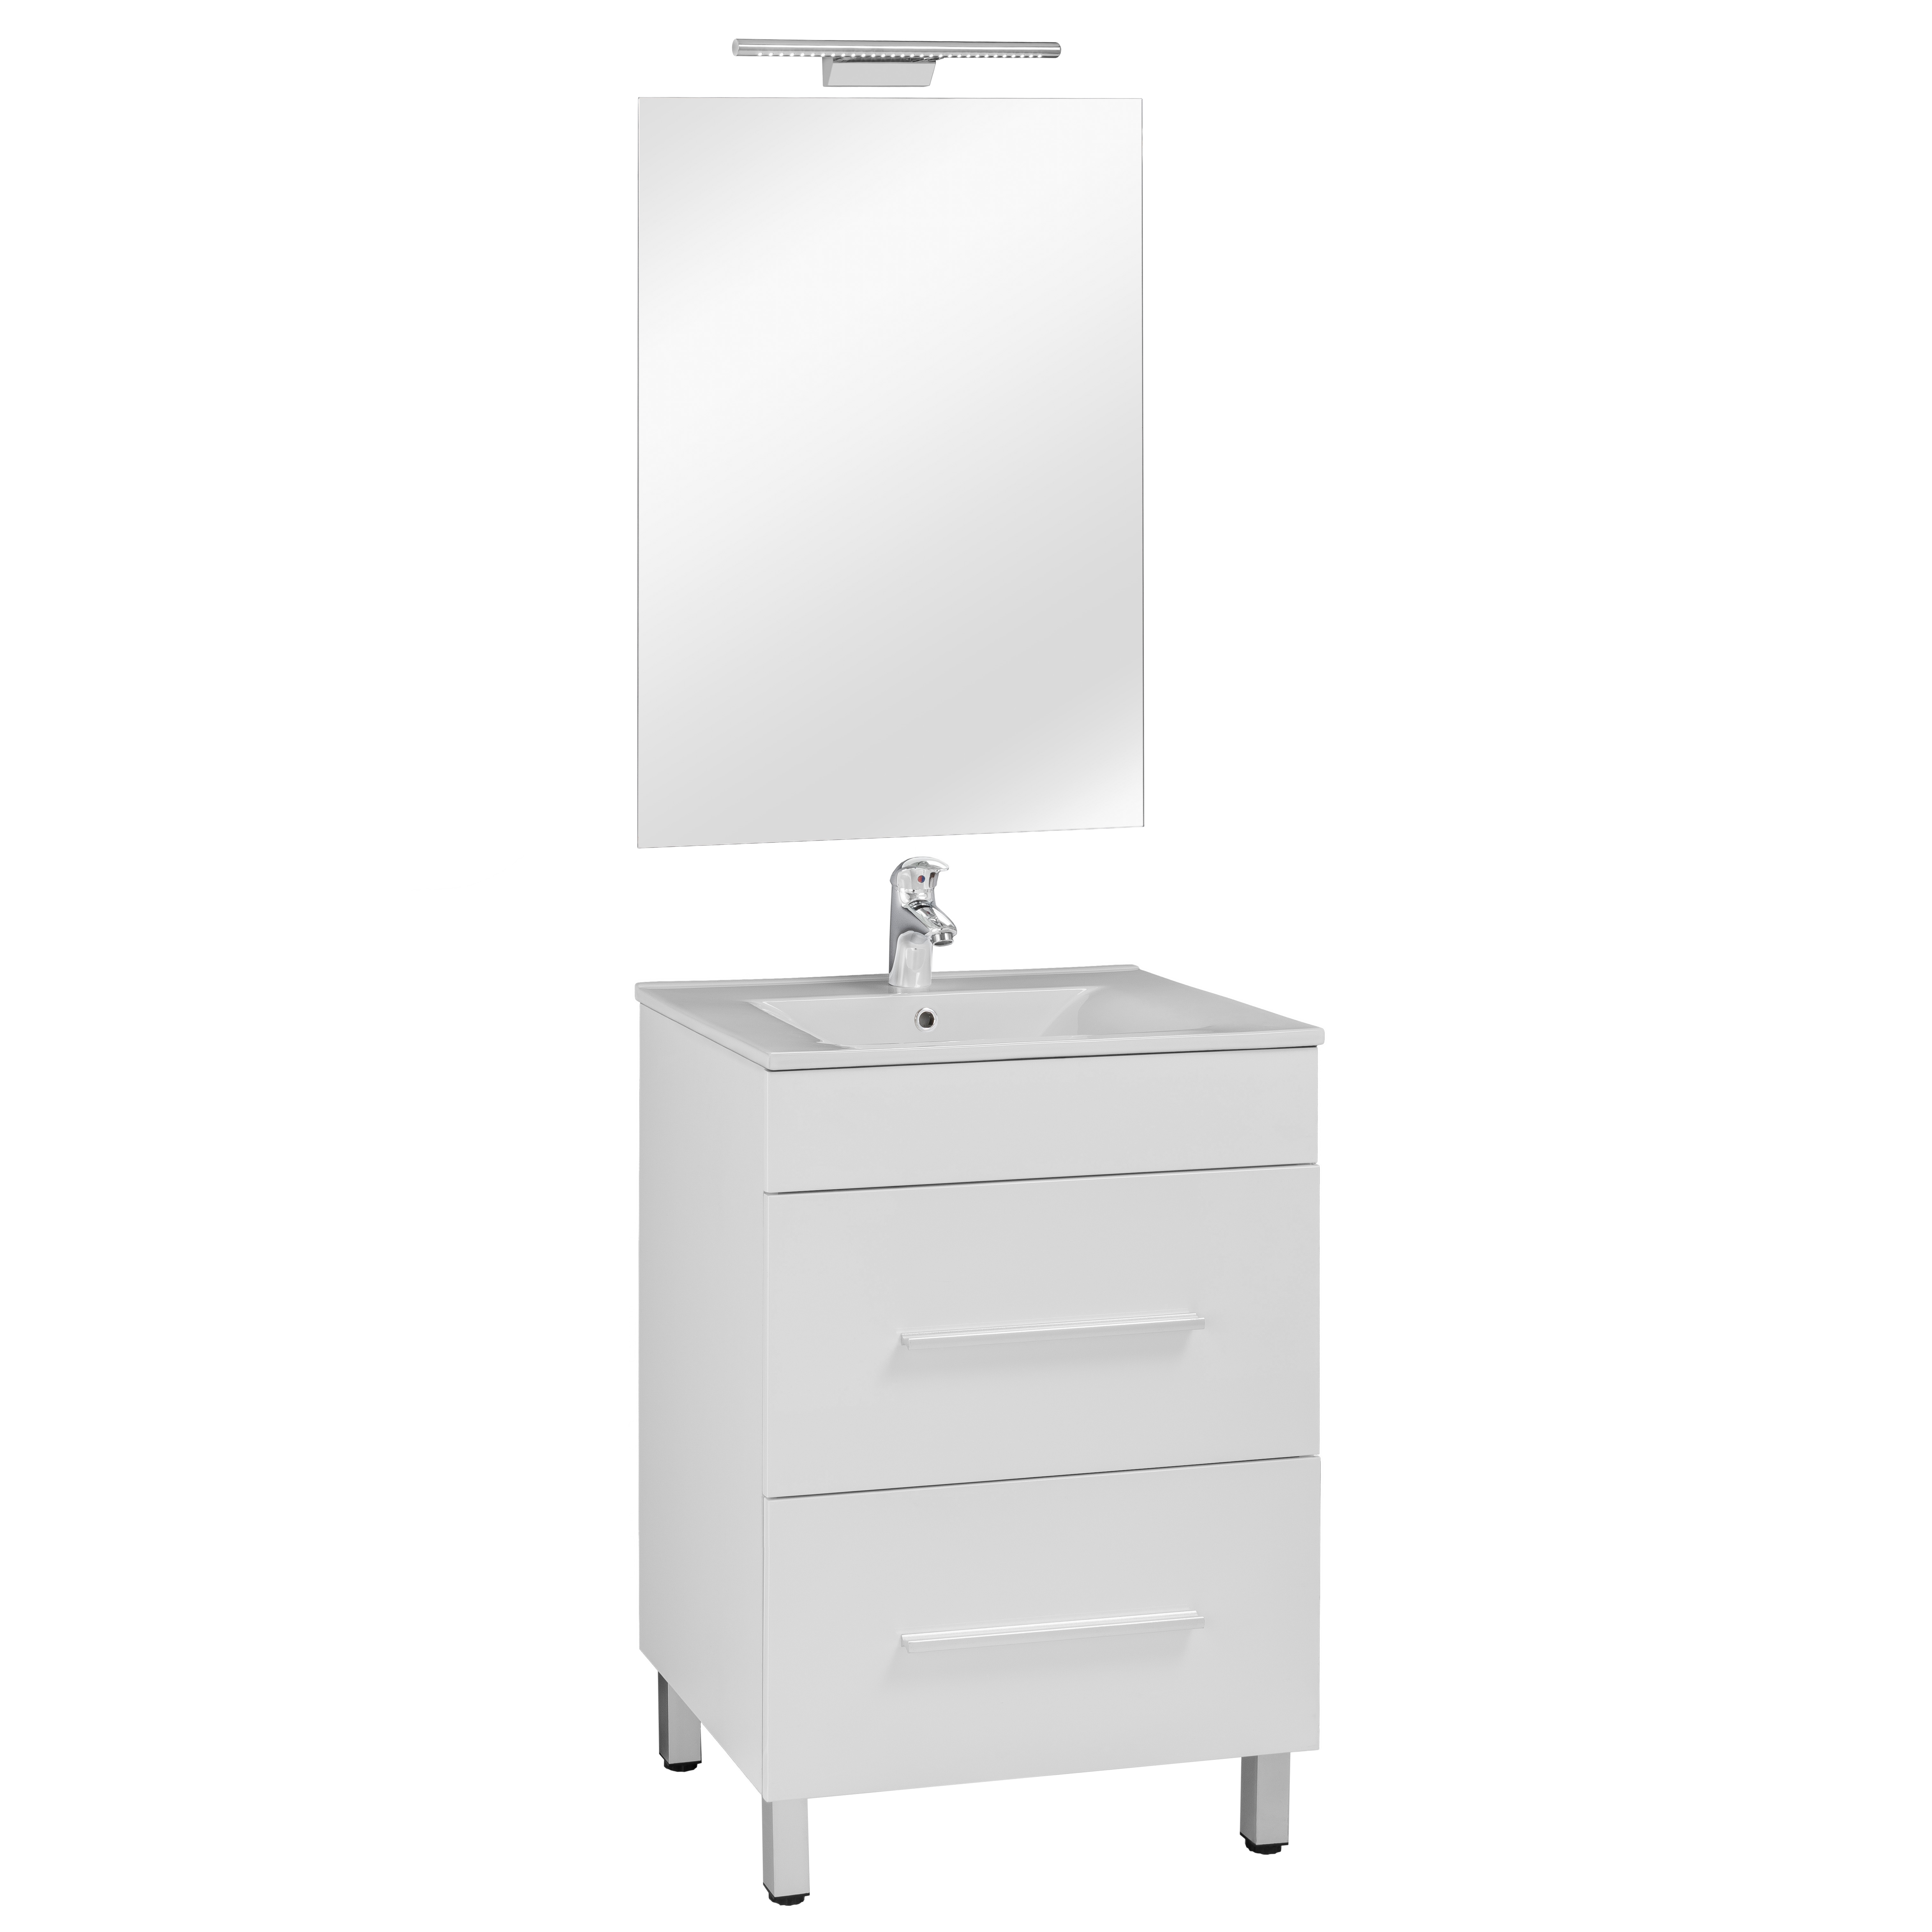 60 FP szekrény+ mosdóval Magasfényű fehér fronttal